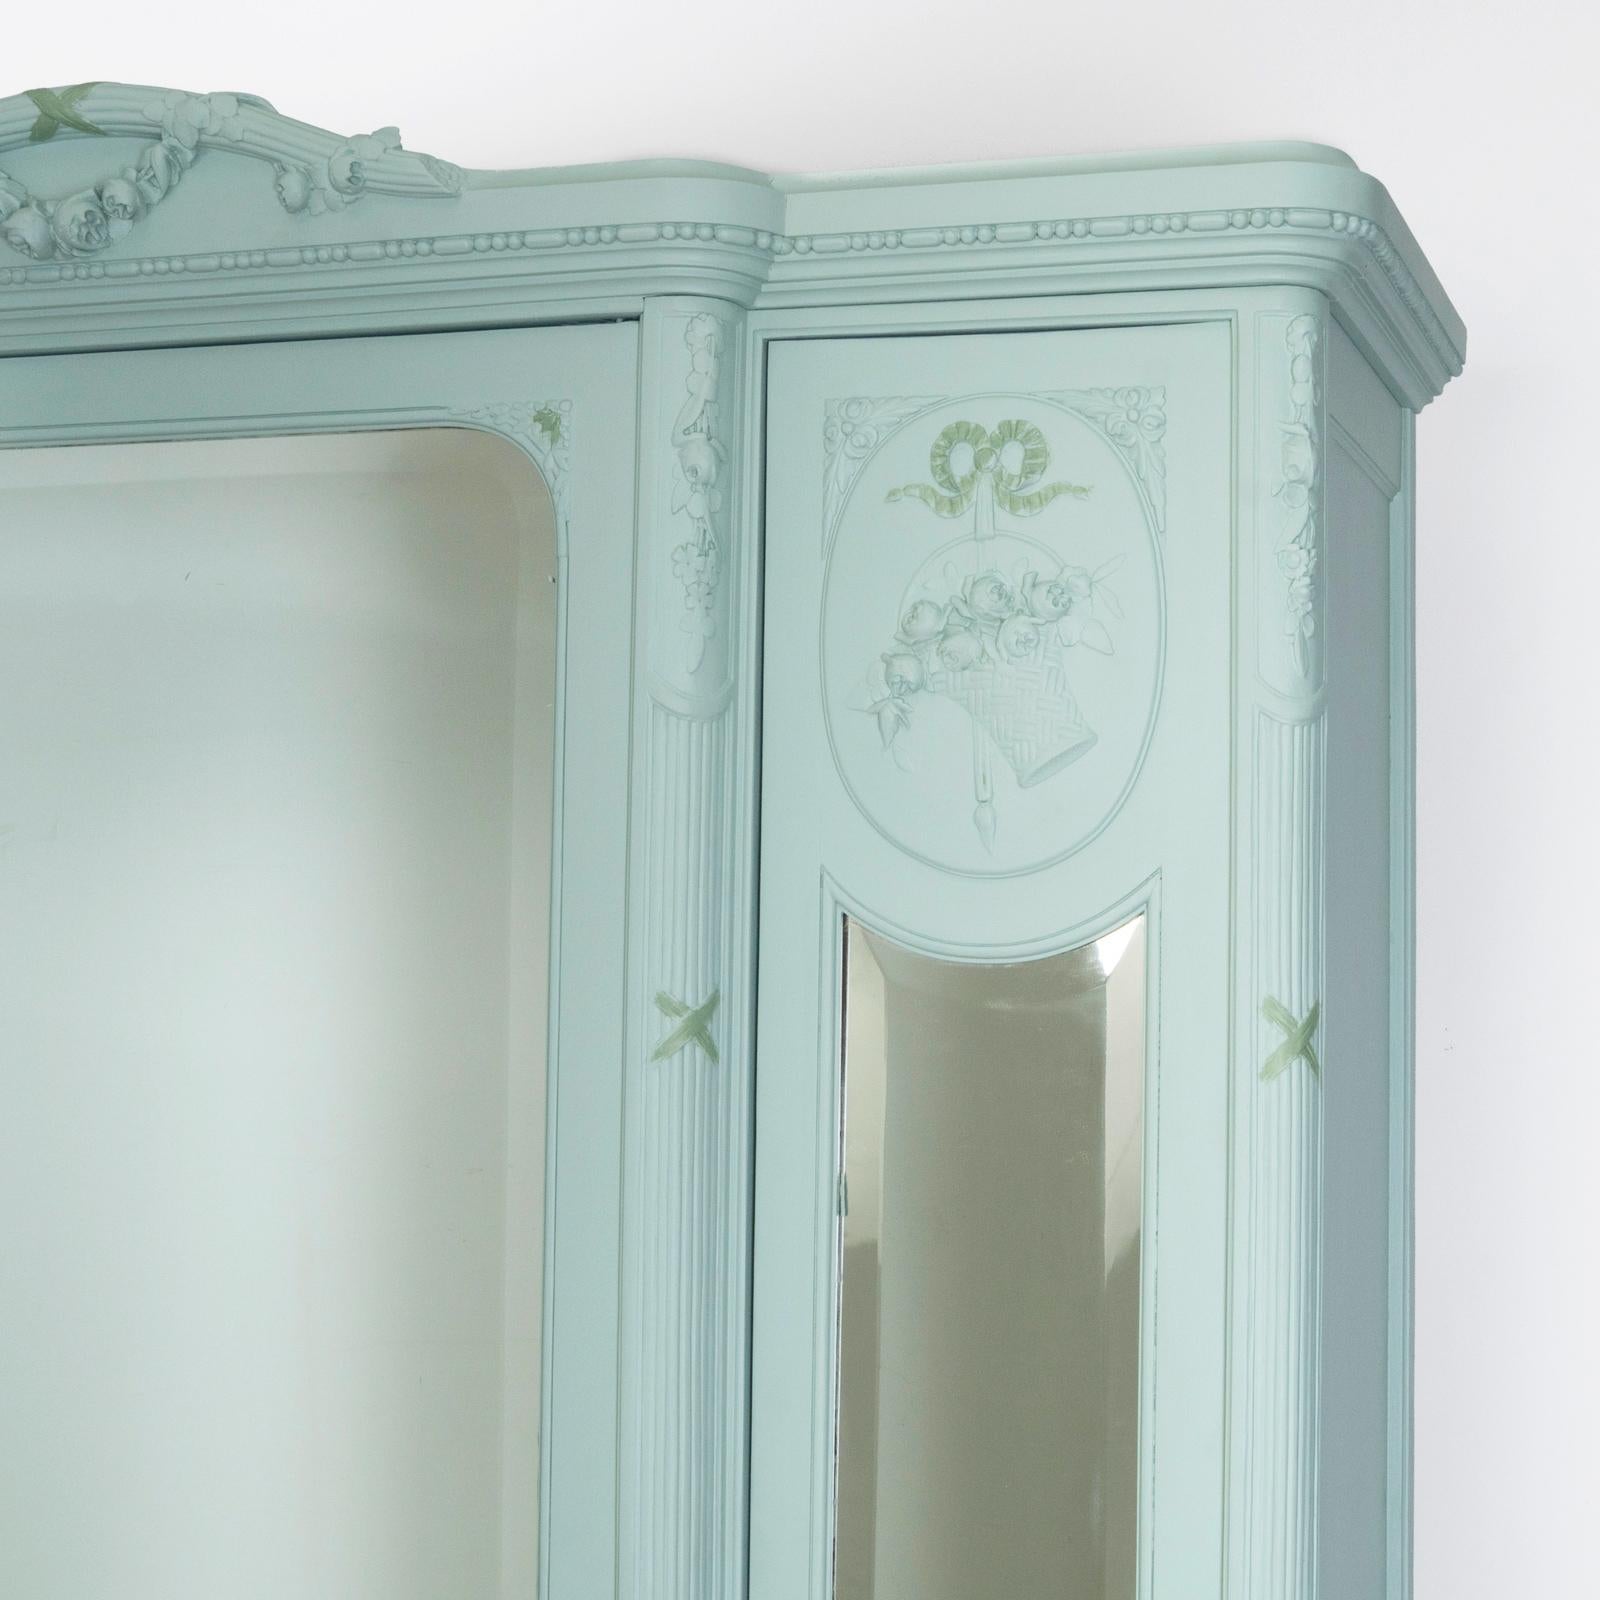 Exquise armoire à miroir à trois portes de style Louis XVI du 19e siècle - un mélange parfait d'élégance, de design et de praticité !

Ornées de panneaux ovales décoratifs, les portes des rétroviseurs latéraux apportent une touche d'exception. Les